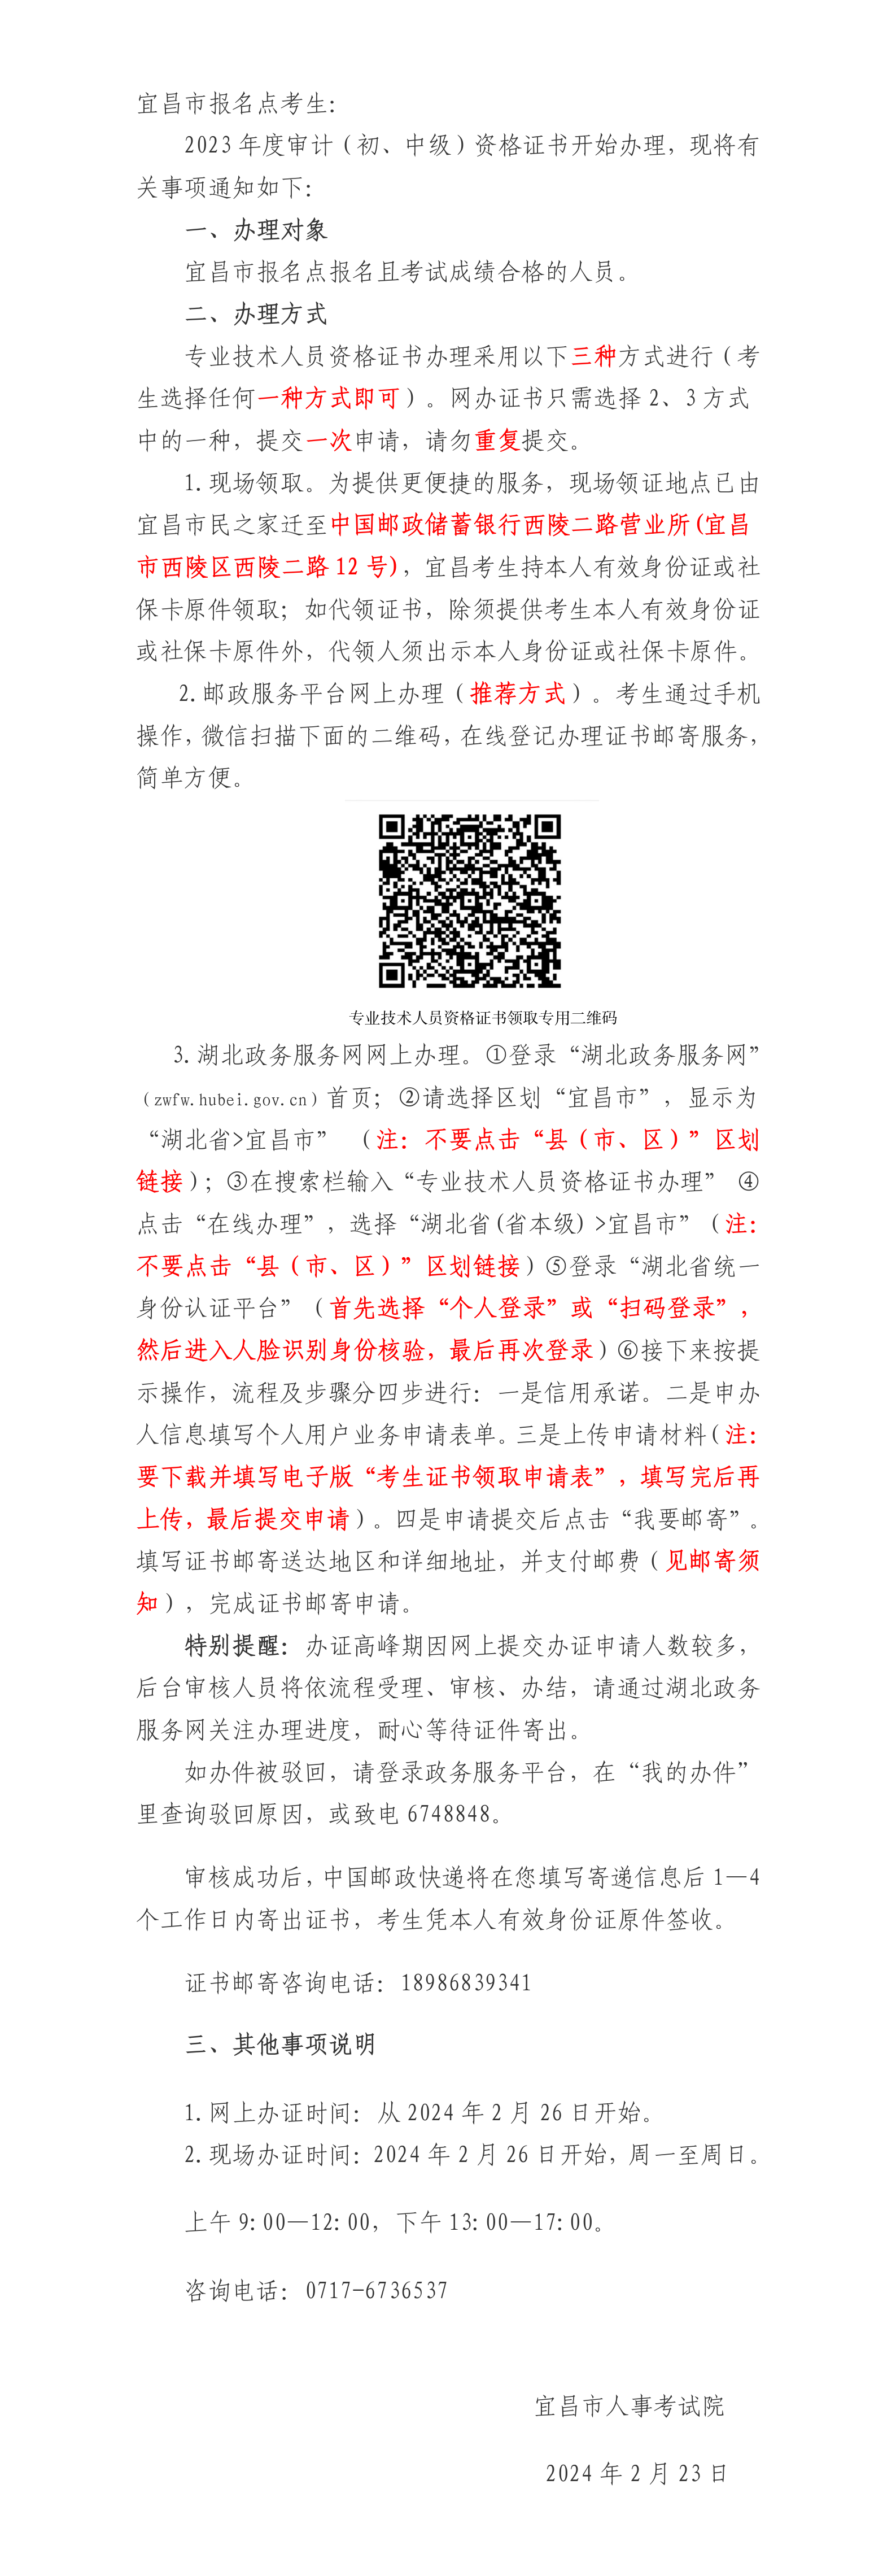 宜昌2023年审计师证书领取通知